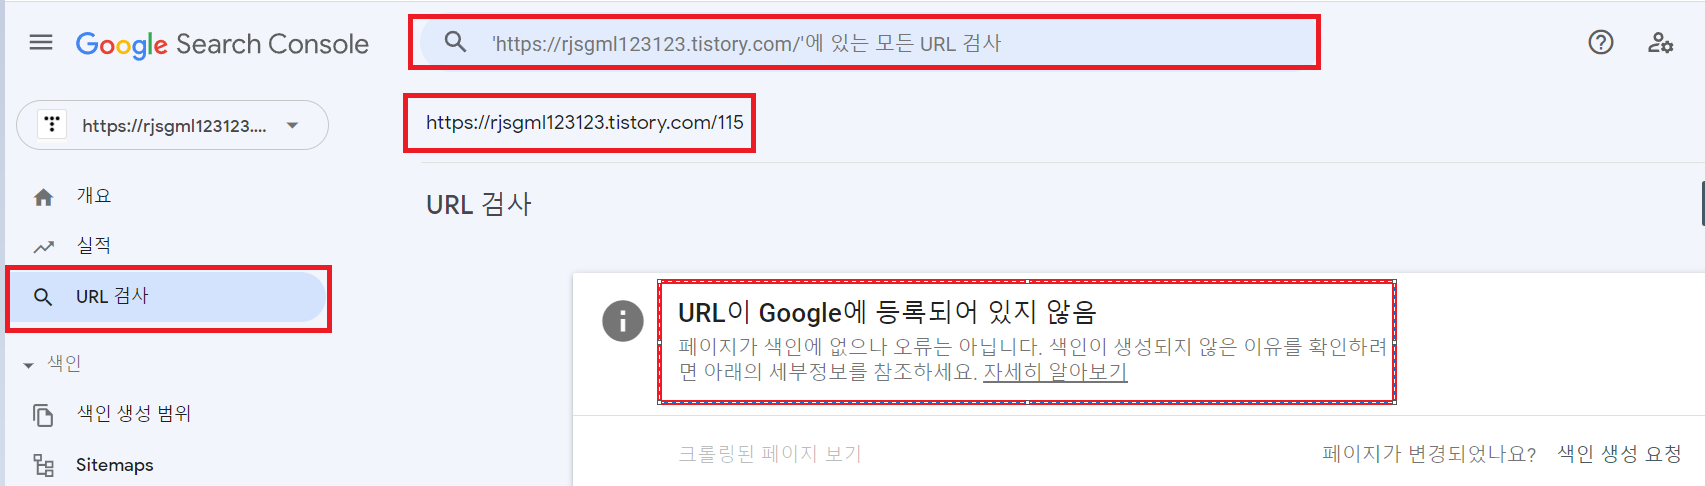 구글 서치콘솔 - URL 검사